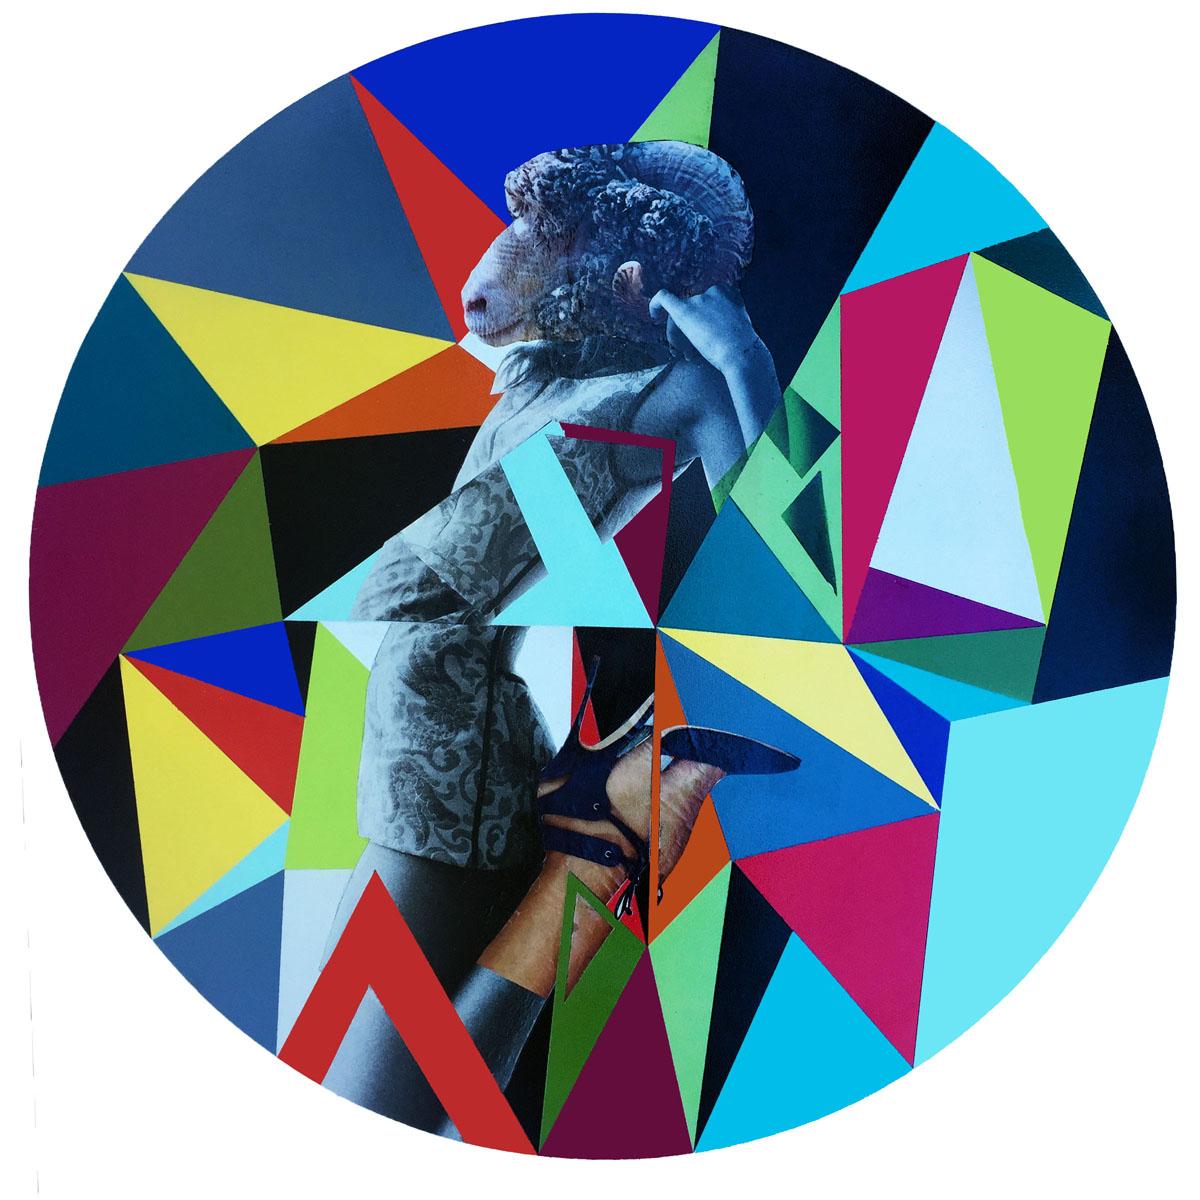 Feed My Sheep, Abstract figurative fashionMixed Media on Plexiglass - Mixed Media Art by Carlos Alejandro